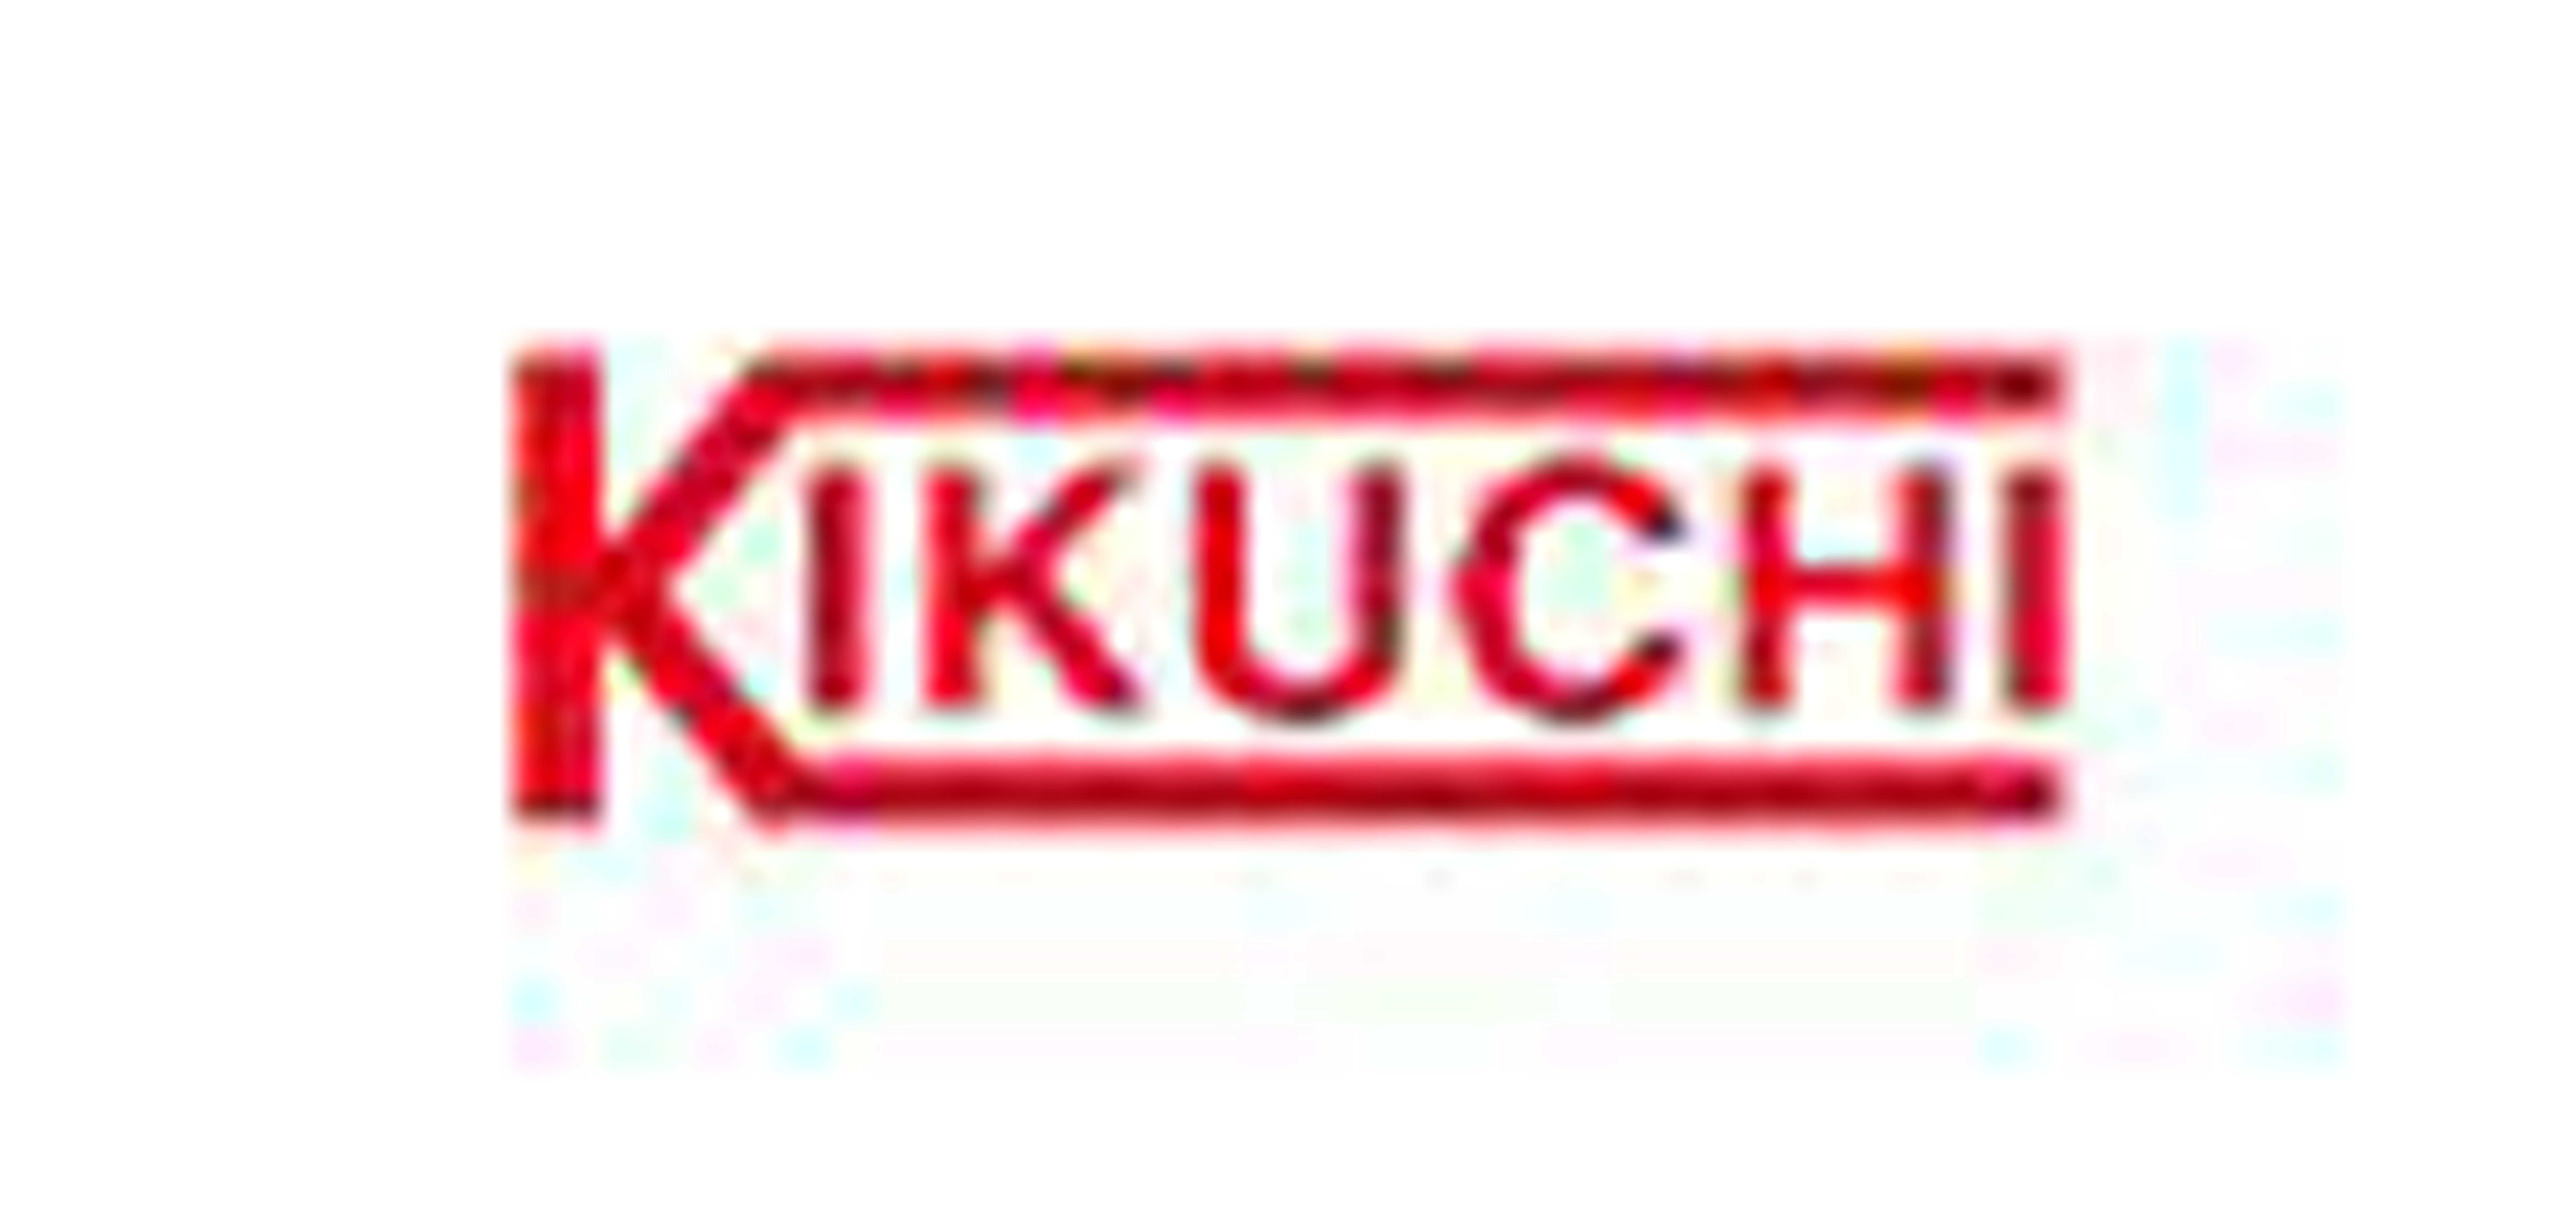 Kikuchi是什么牌子_菊地品牌怎么样?